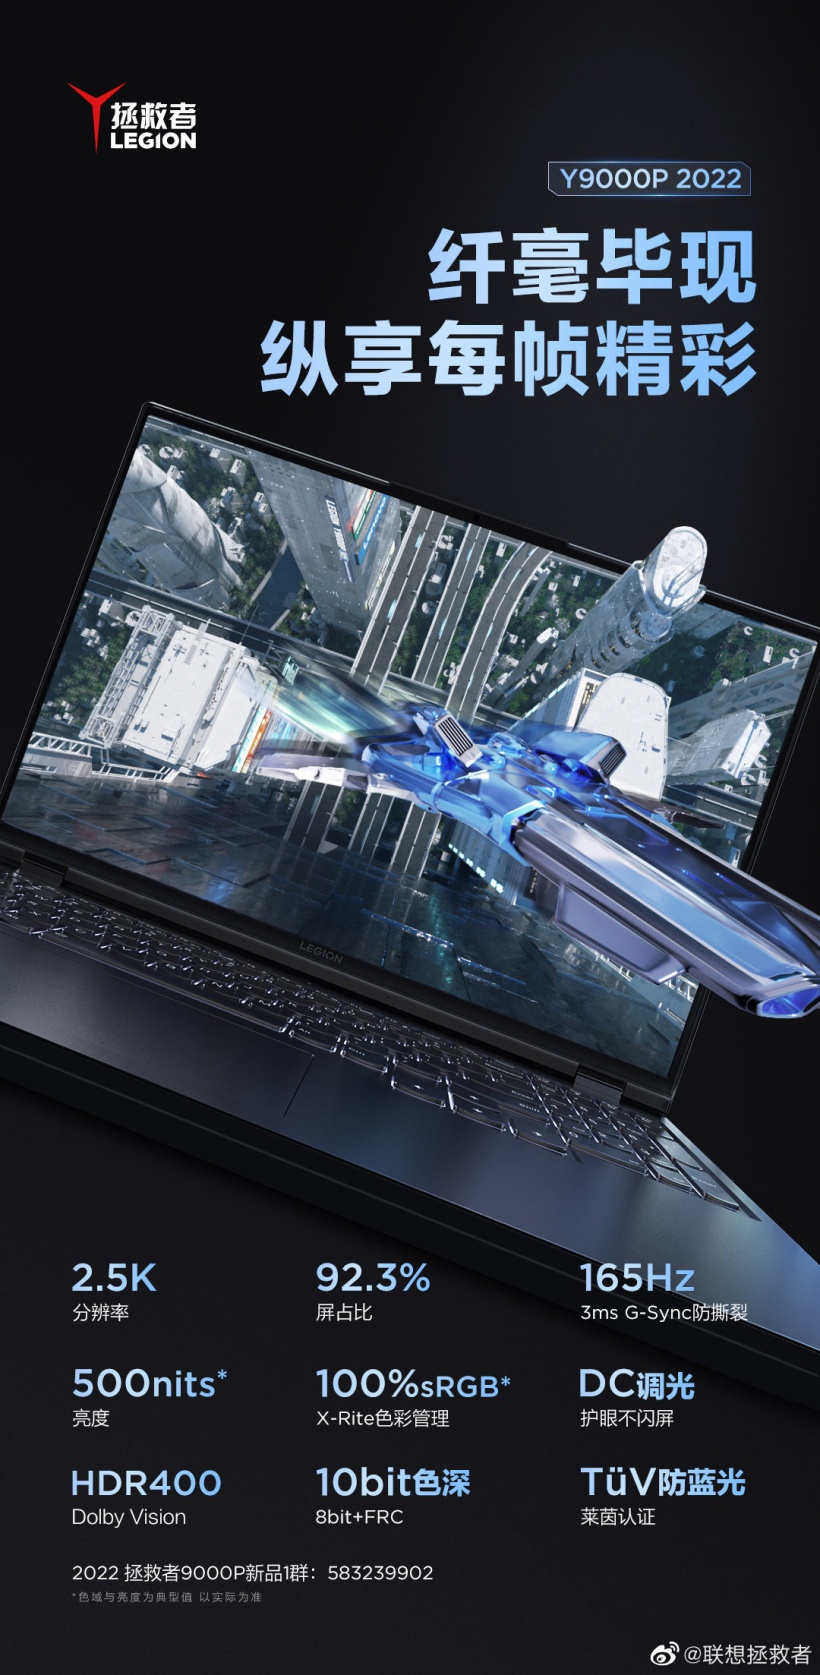 Notebook Gamer Lenovo; Lançamento do novo Legion Y9000P